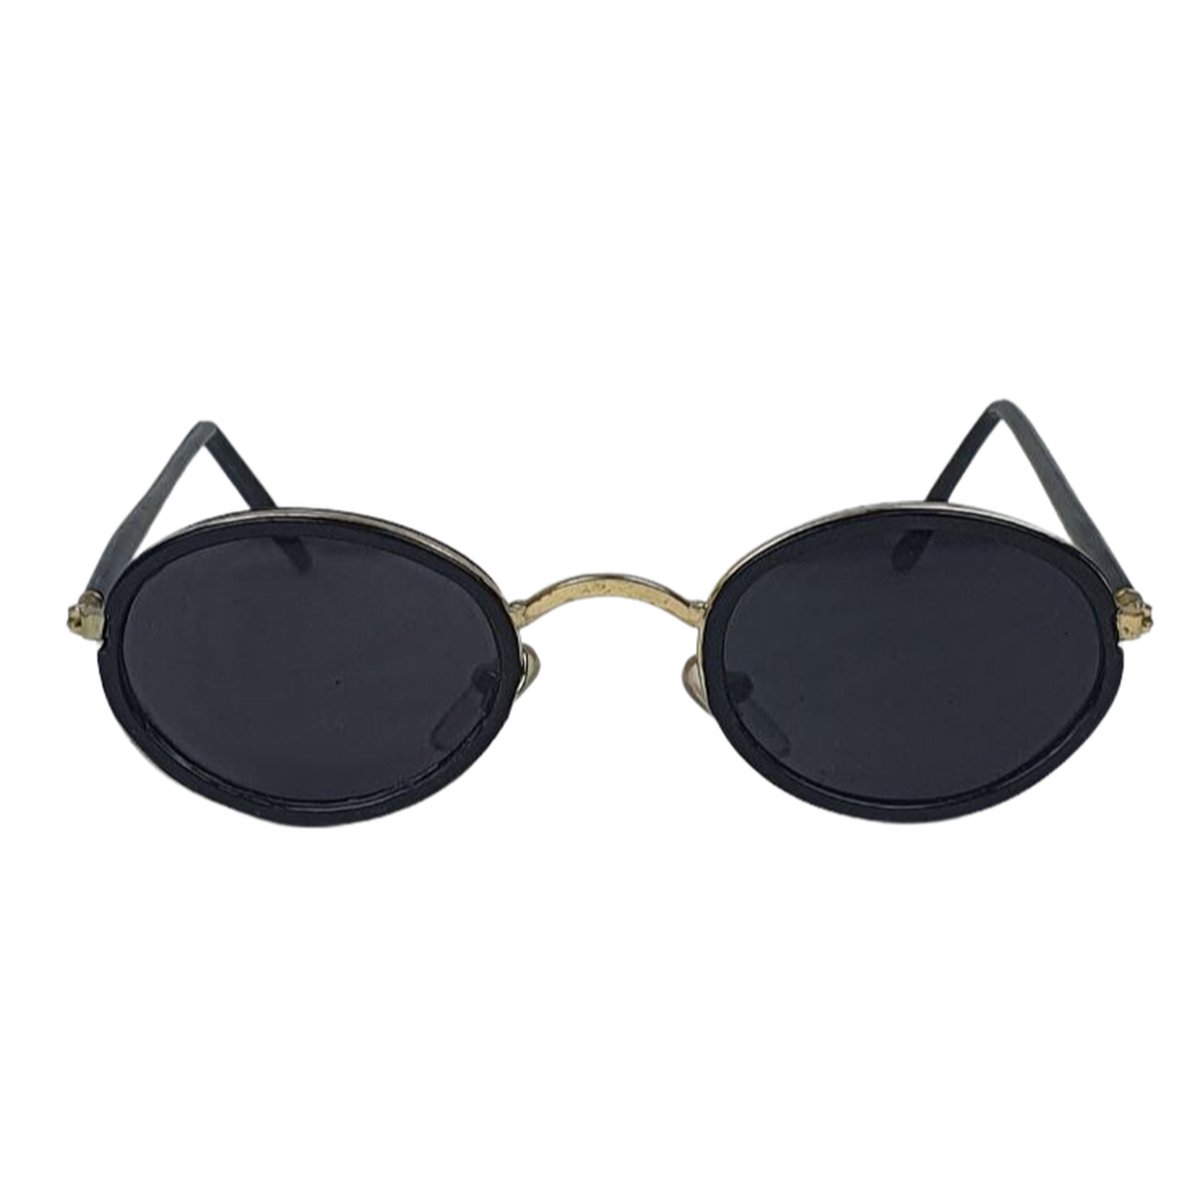 Zonnebril KENZO - UV 400 - Goud Zwart - Trendy bril voor hem en haar - Normaal Model - Shades - Unisex